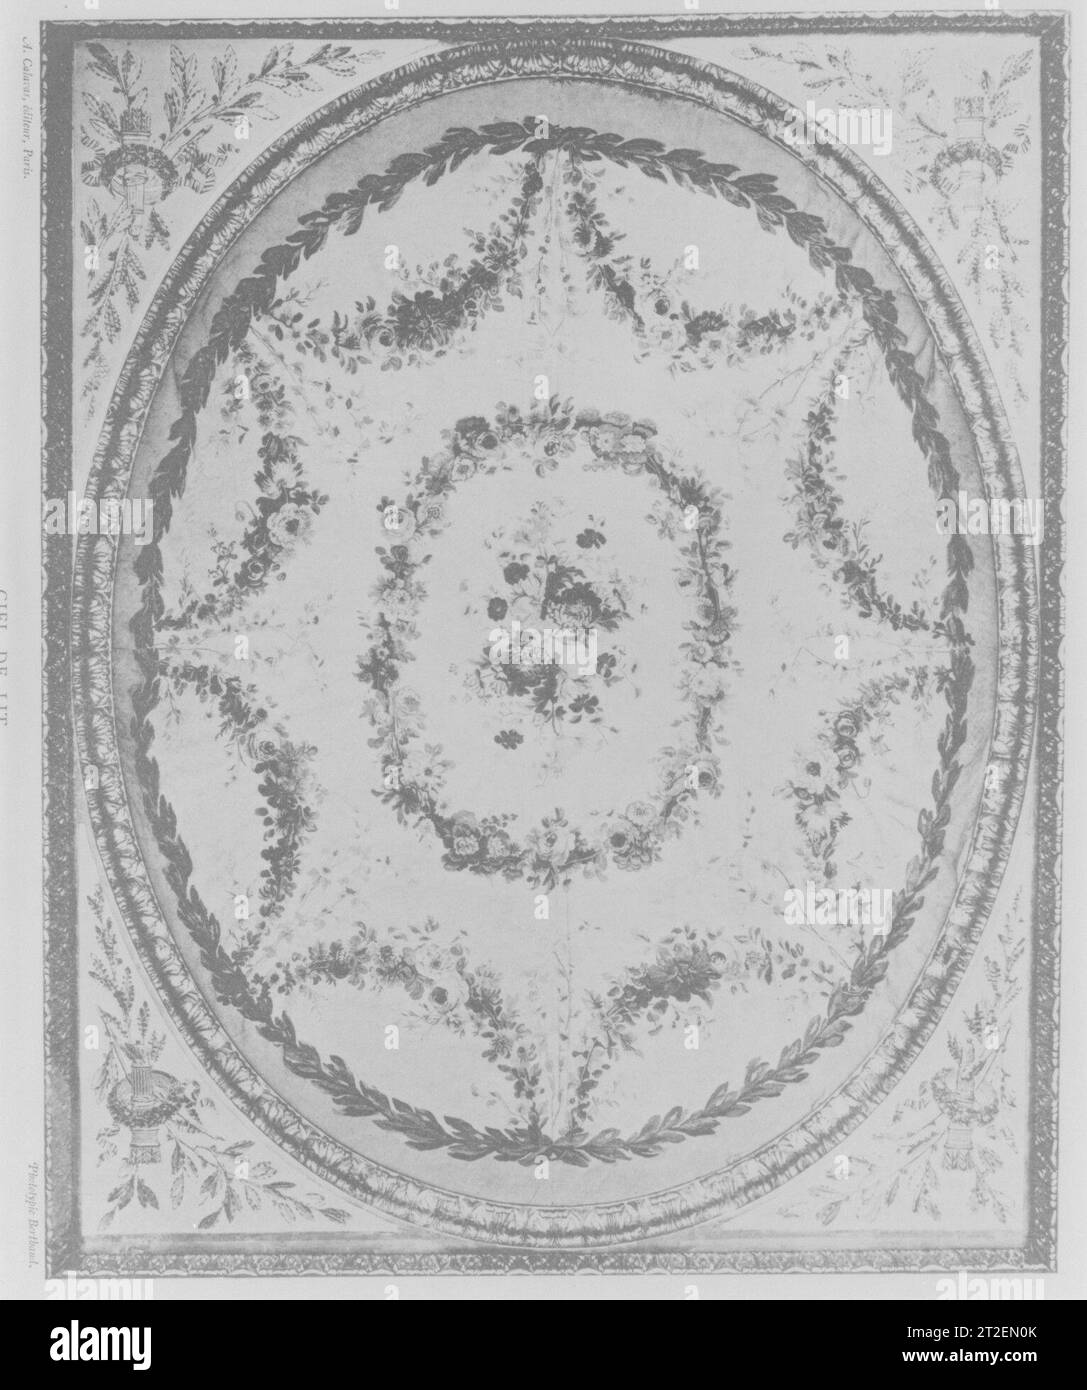 Doublure de tapisserie pour testeur (ciel pour lit à la duchesse en impériale) Tapisserie fabriquée à Beauvais ca. 1780–90 comme sa verrière en dôme pleine grandeur est suspendue au plafond plutôt que supportée par des poteaux, ce banc d'essai, qui porte le cachet du menuisier Georges Jacob, est un type appelé lit à la duchesse en impériale. Ses tentures originales mais maintenant fragiles, tissées en 1782–83 à la manufacture de tapisserie de Beauvais d'après les dessins de Jean-Baptiste Huet (1745–1811), ont été remplacées par du damassé de soie moderne, à l'exception de la doublure de la coupole intérieure. Les lits français du XVIIIe siècle avaient tendance à être élevés, comme Banque D'Images